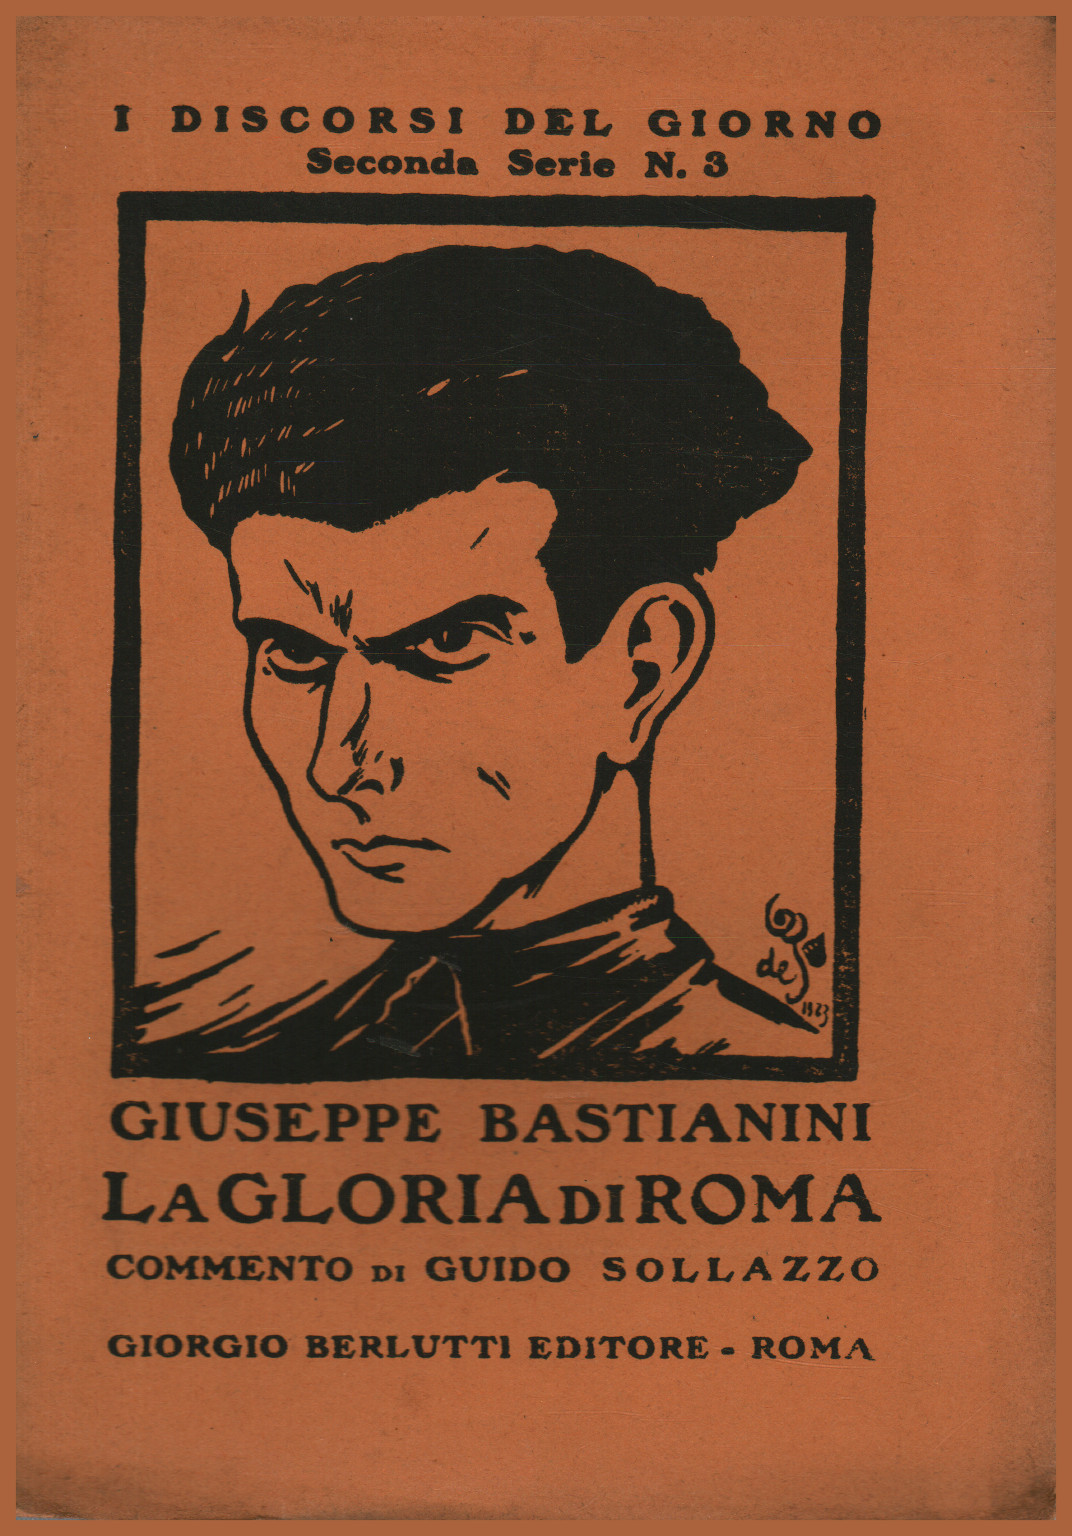 La gloria de Roma, Giuseppe Bastianini